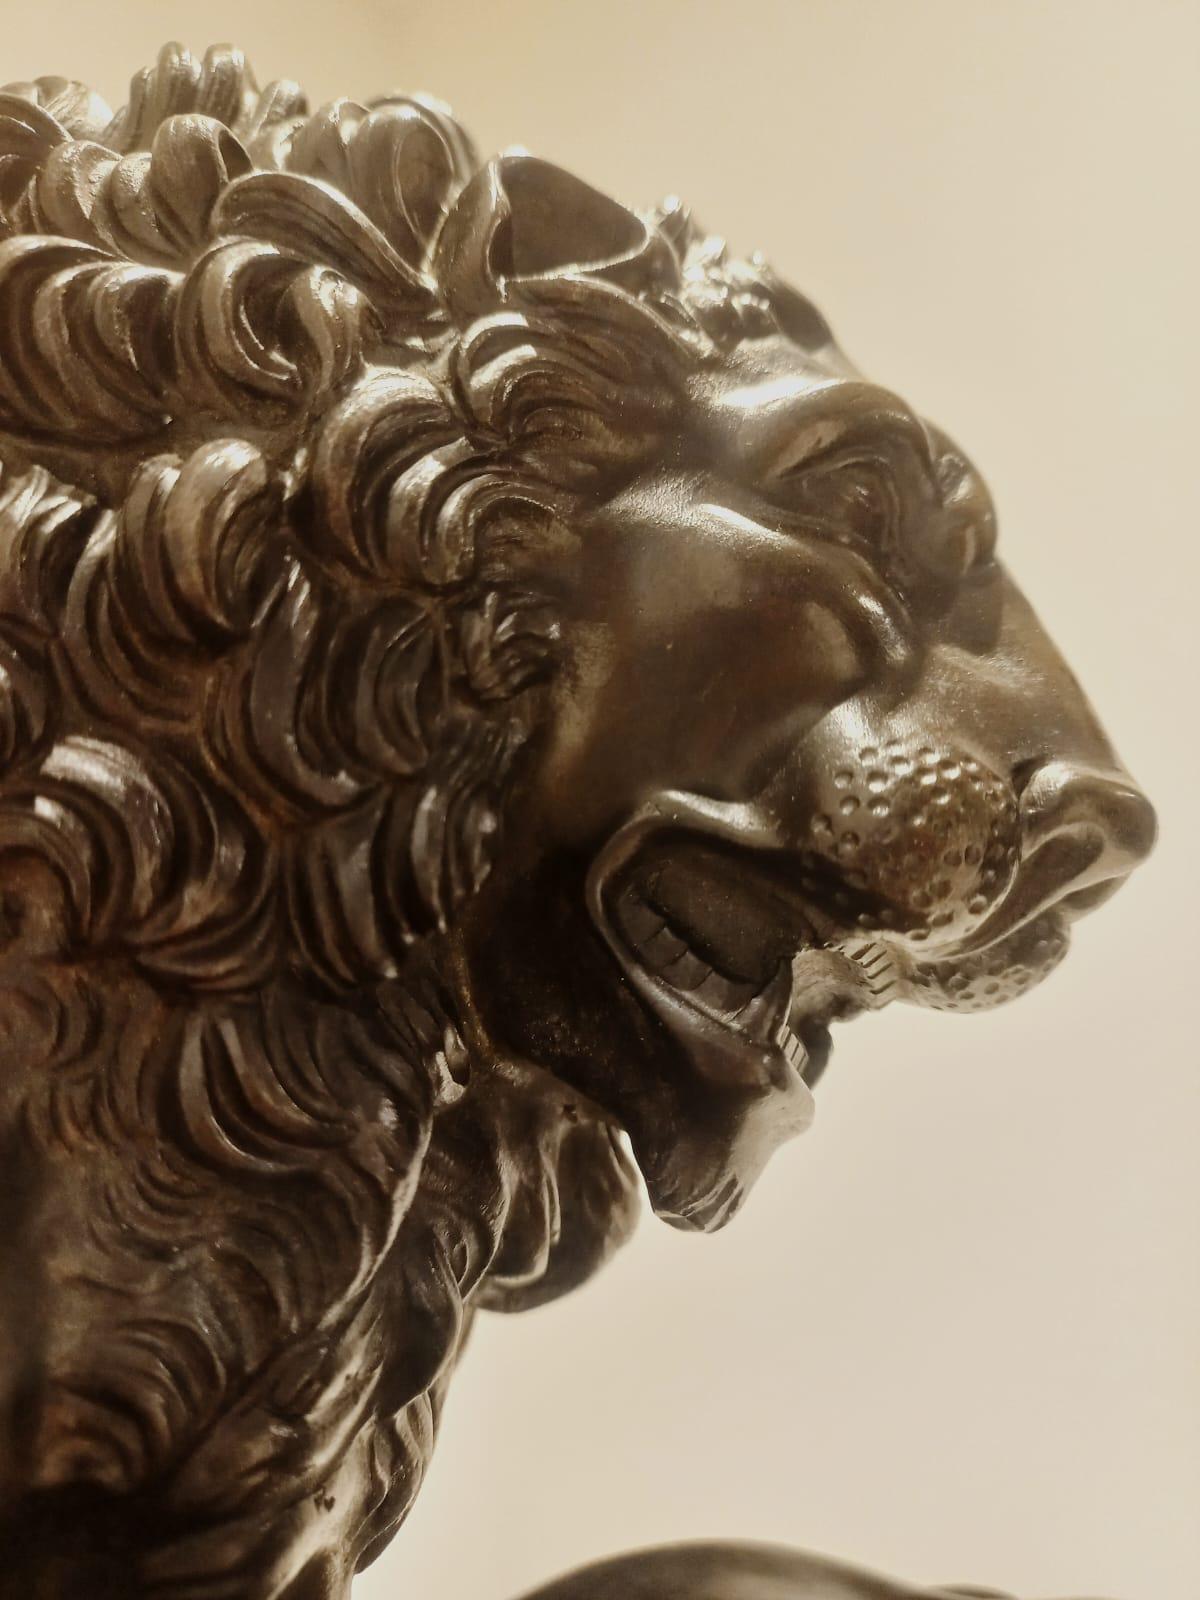 Lion avec patte sur boulet de canon en agate jaspe, bronze ciselé et bruni, 19e siècle, mesure 33x11 cm, hauteur 20 cm, le socle en bois ébonisé mesure 36x15 cm, hauteur 10 cm.
La sculpture représente le lion en marbre de la Loggia dei Lanzi sur la